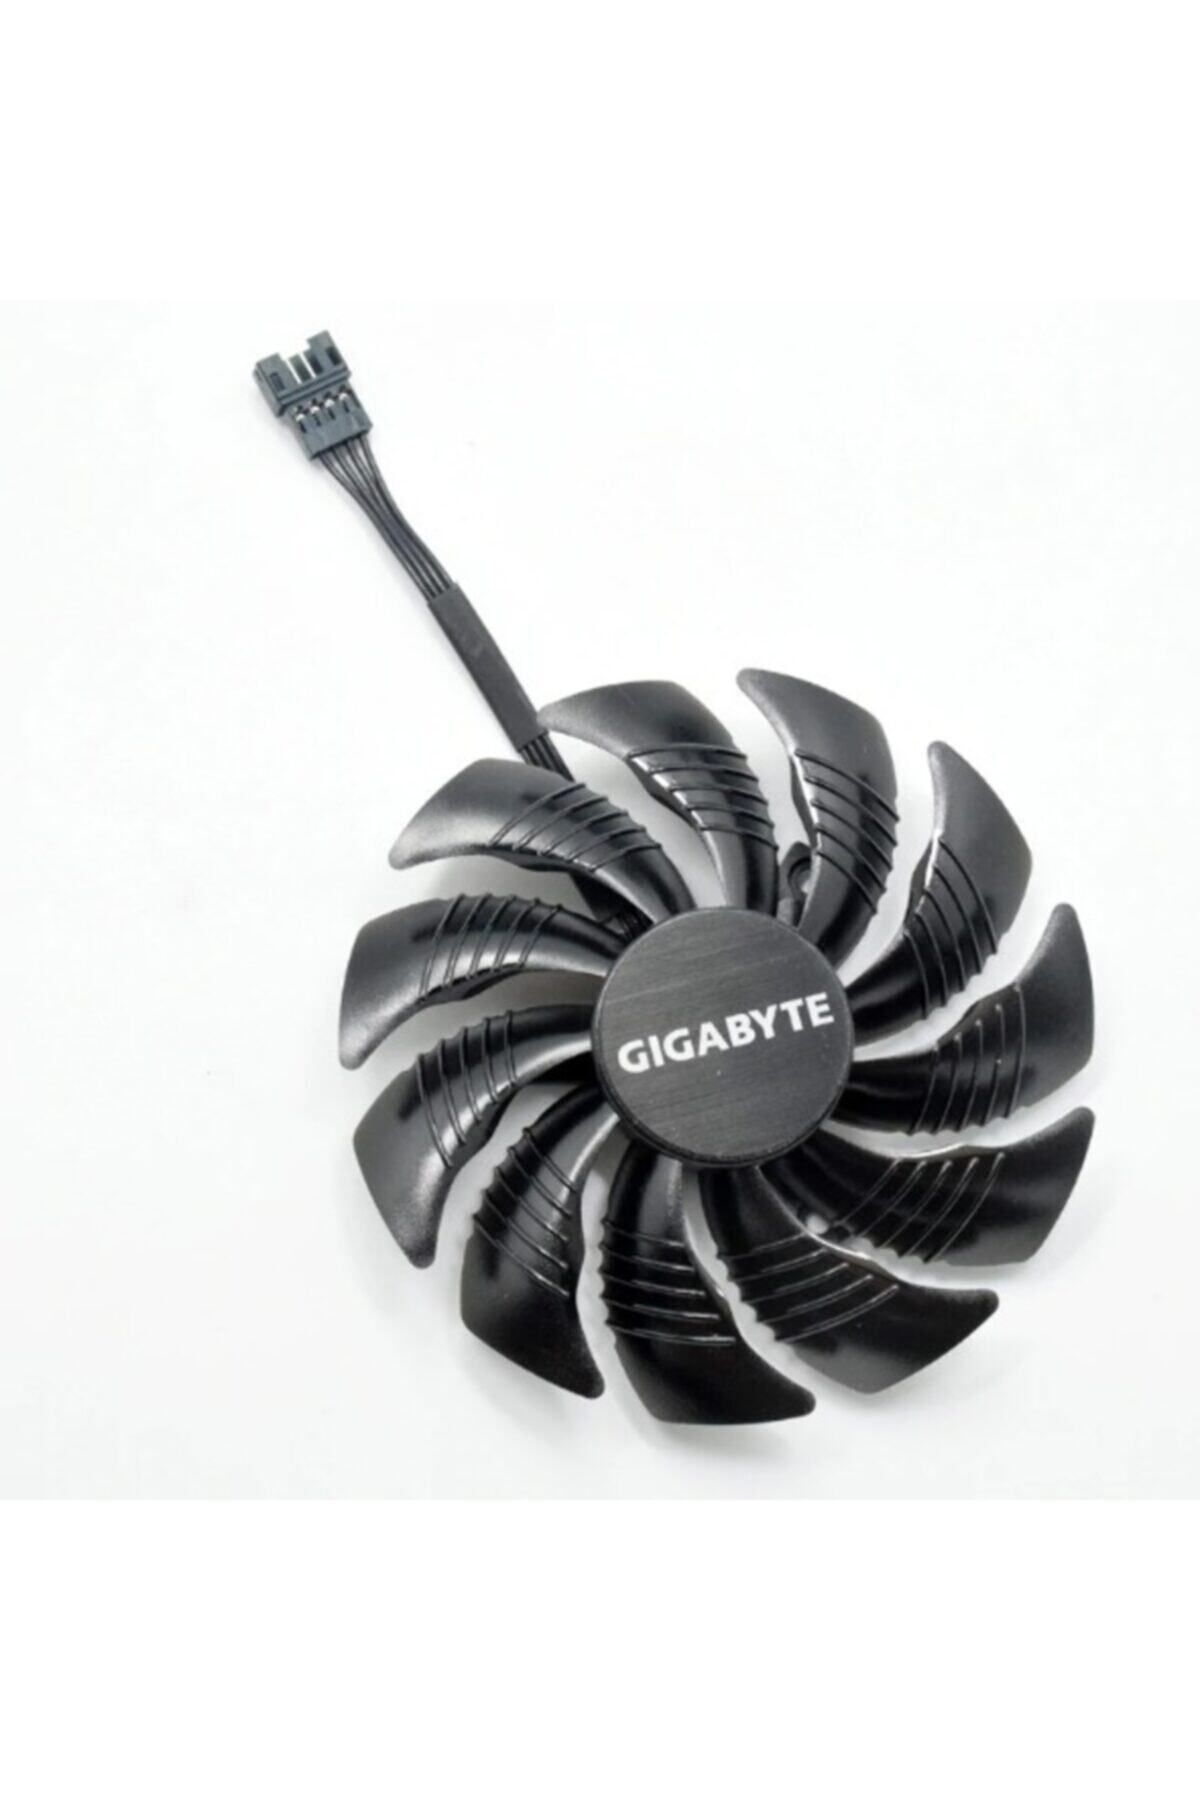 Everflow Gıgabyte Aorus Radeon Rx 580 8g Fan